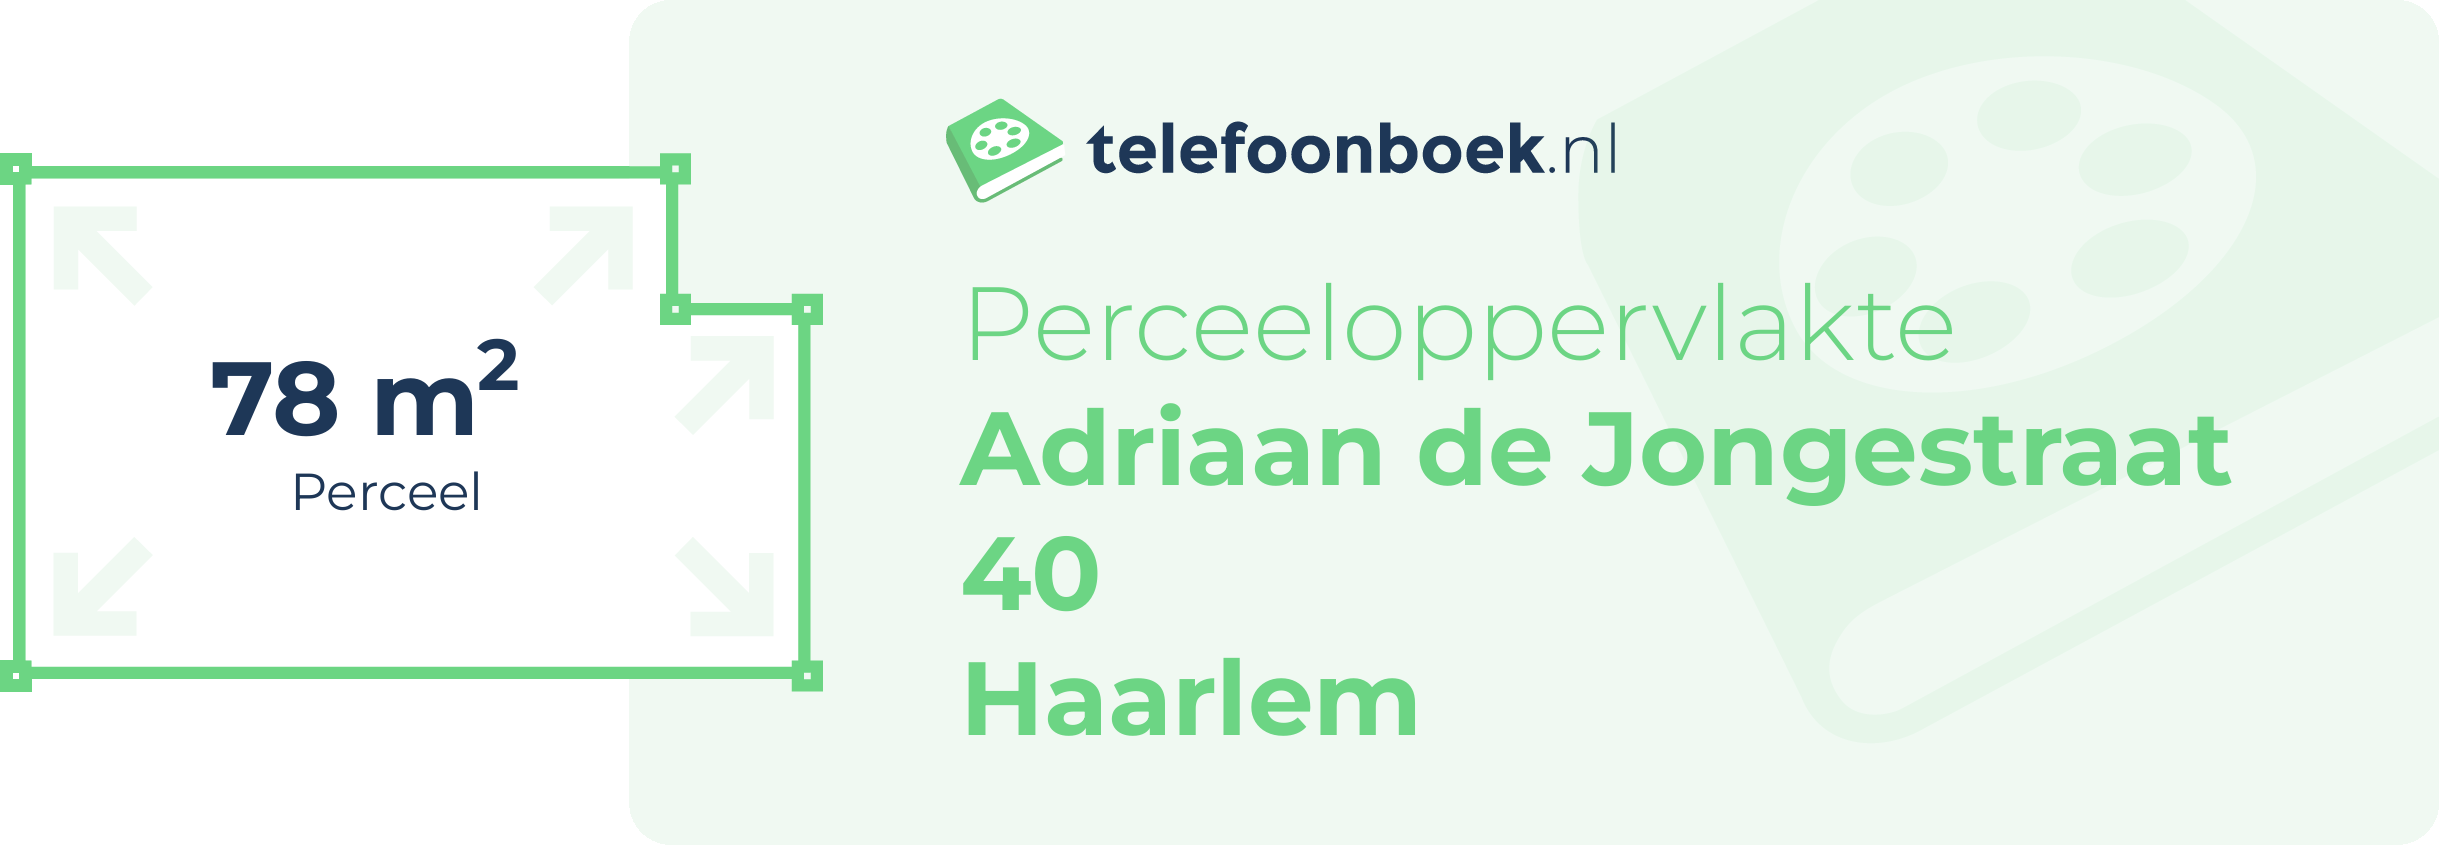 Perceeloppervlakte Adriaan De Jongestraat 40 Haarlem